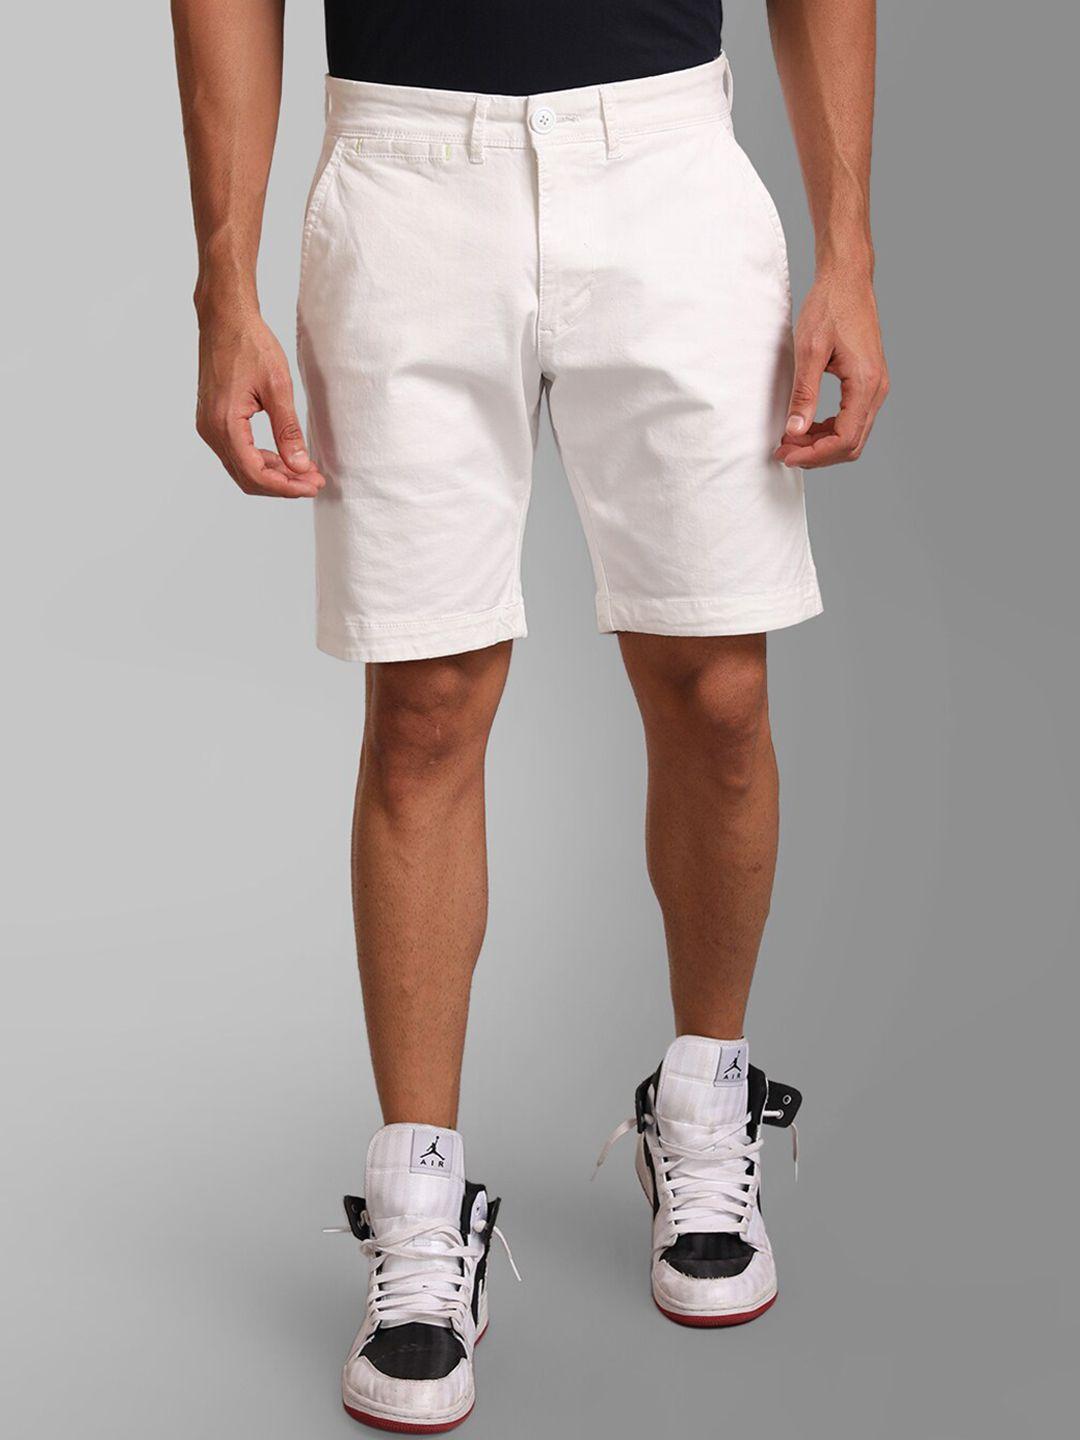 kz07-by-kazo-men-white-high-rise-sports-shorts